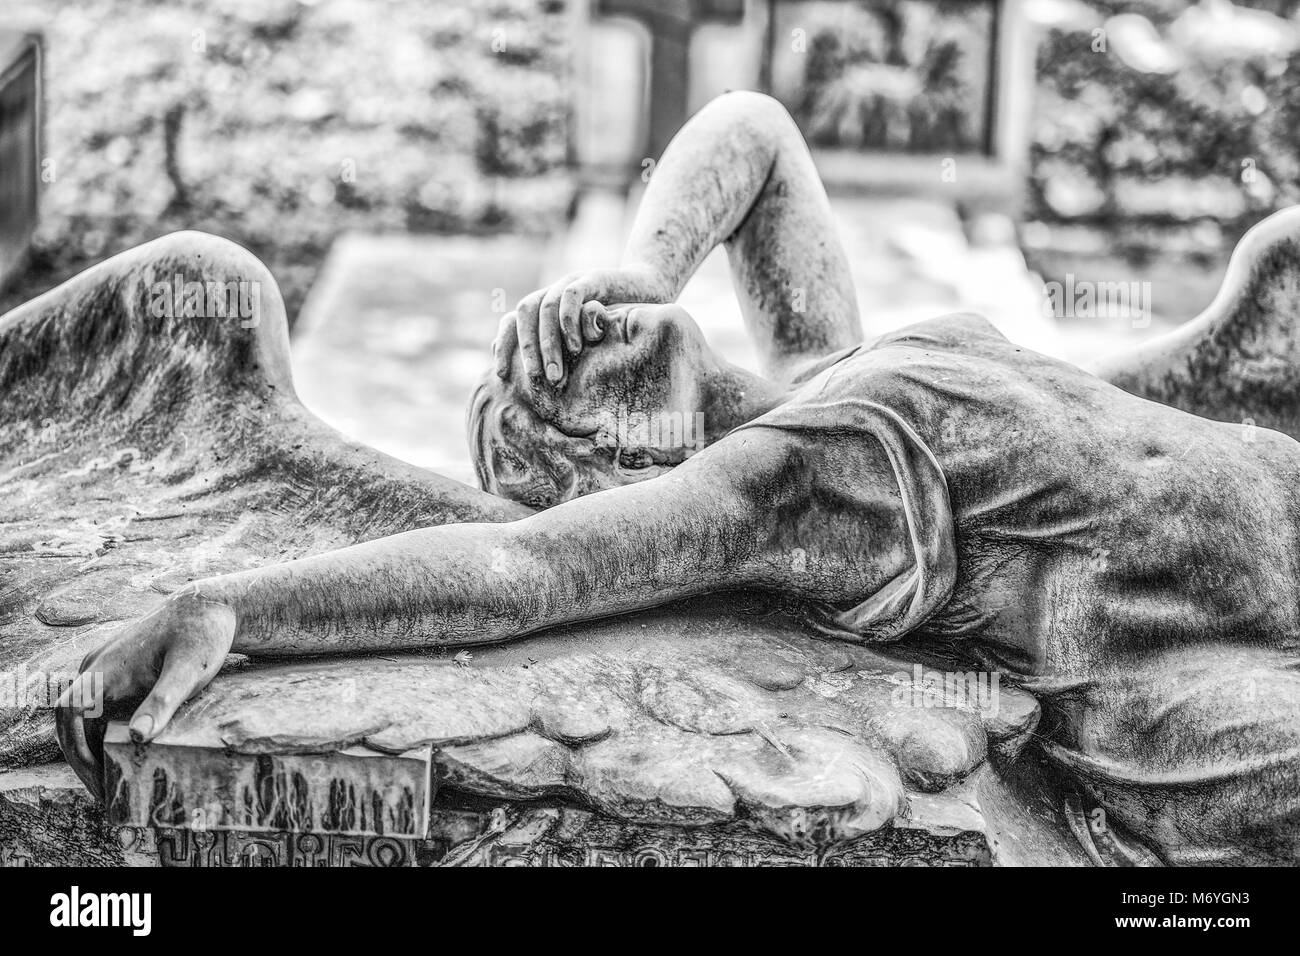 Tomba della famiglia Ribaudo, cimitero monumentale di Genova, Italia, famoso per la copertina del singolo della band inglese Joy Division. Foto Stock